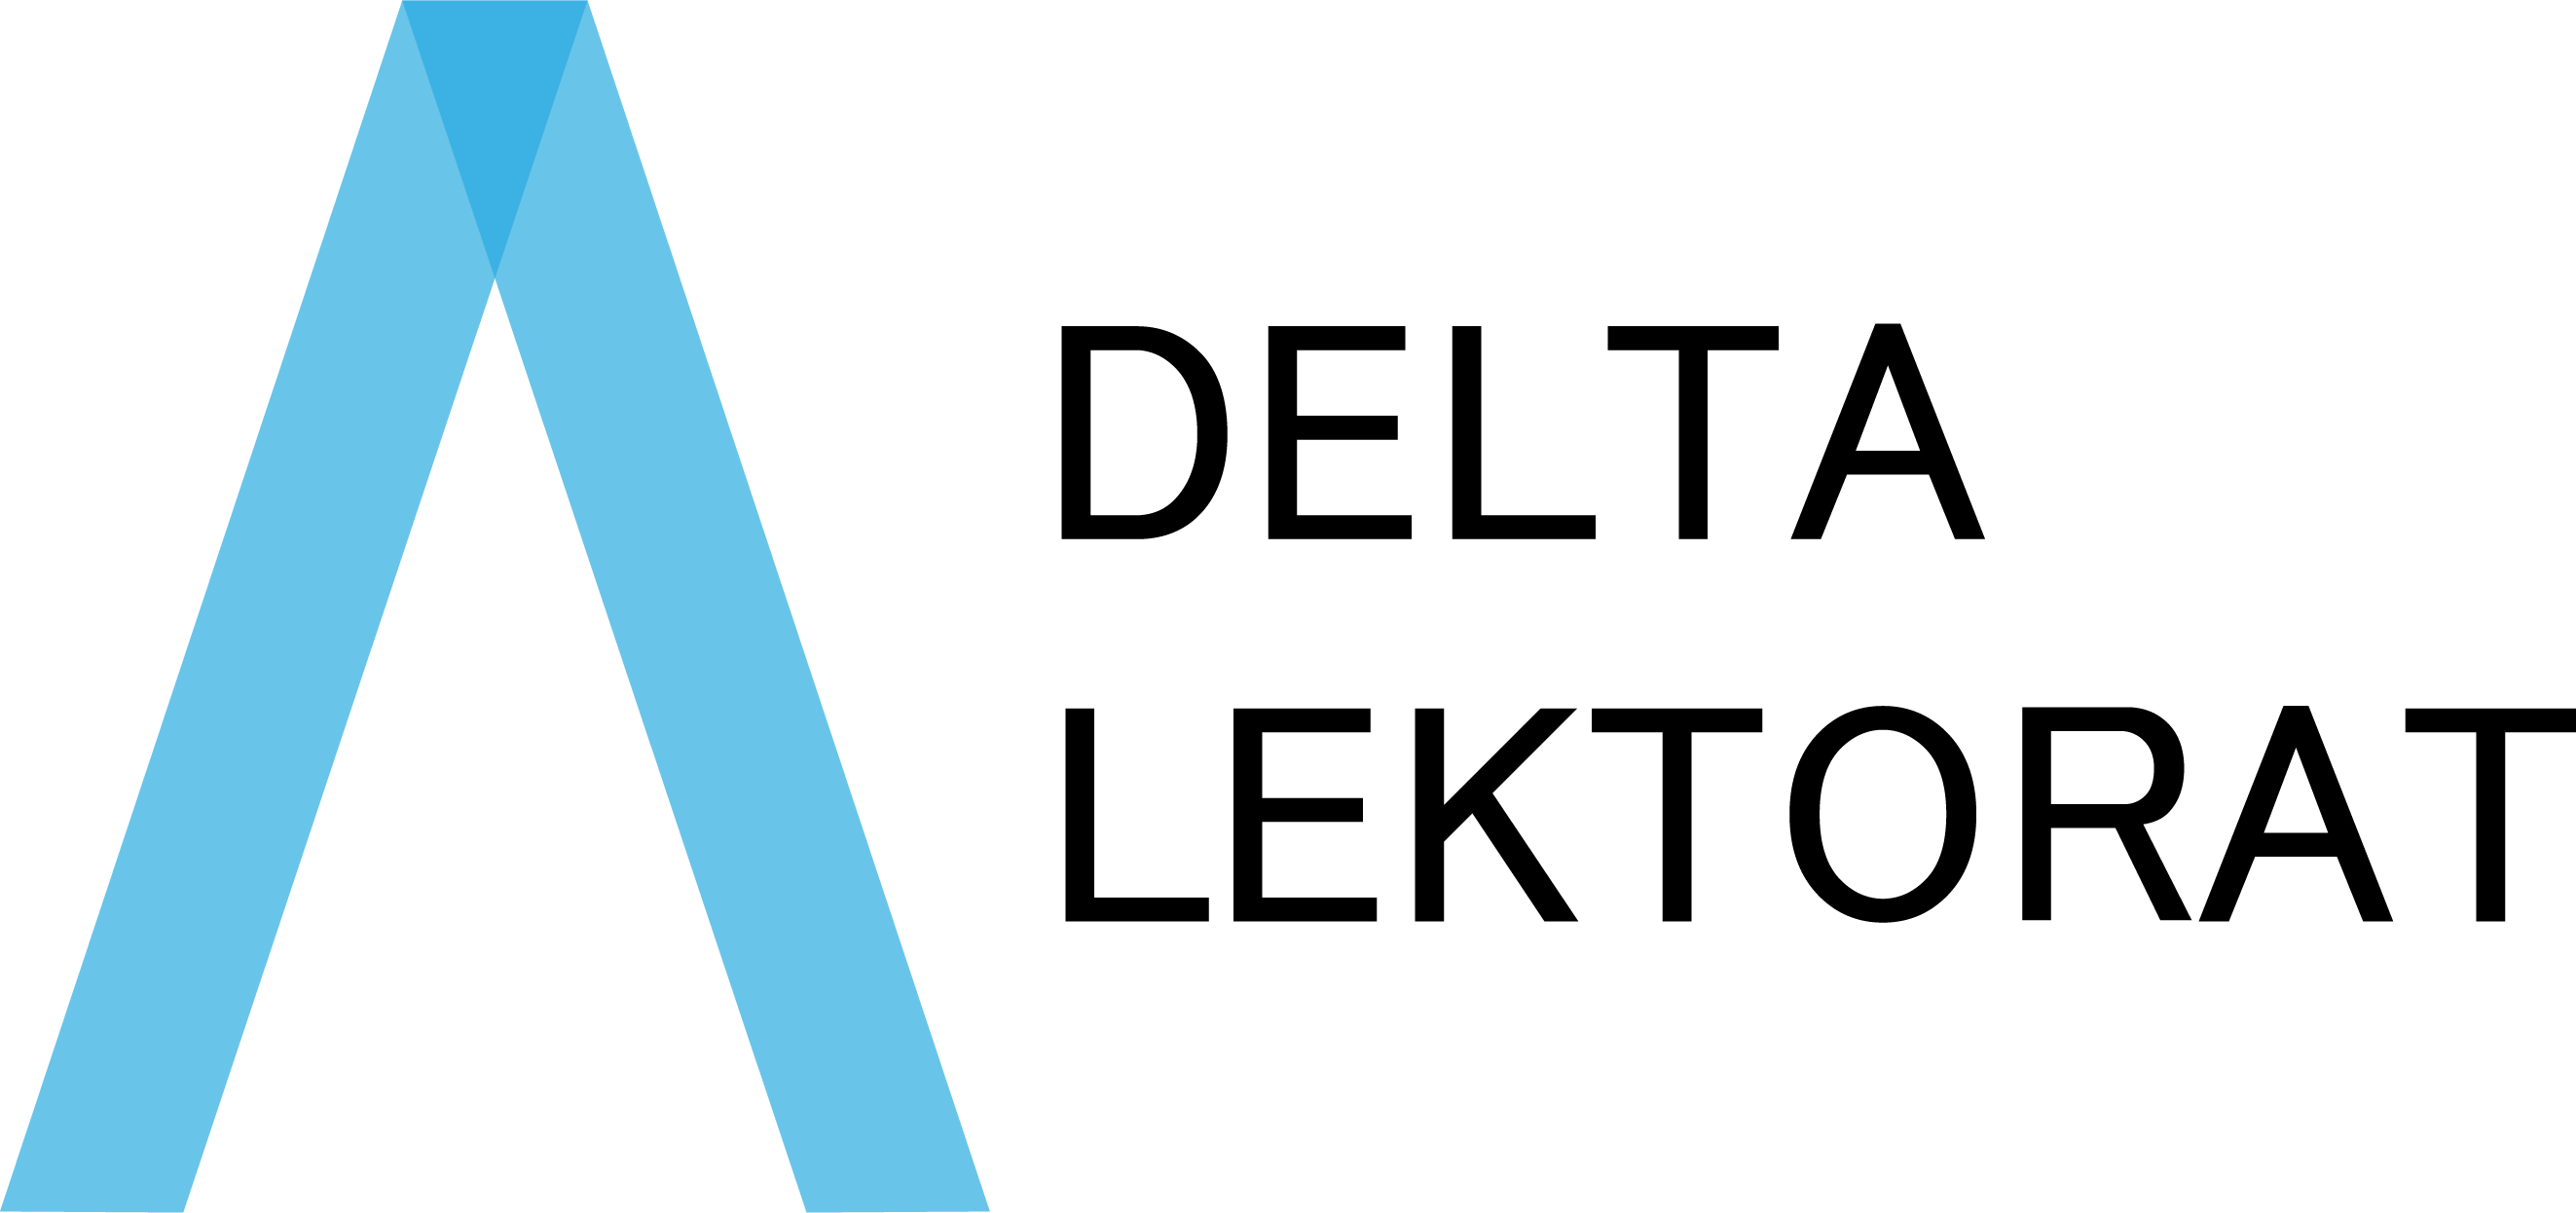 Azem Kampfsport Partner Logo Delta Lektorat